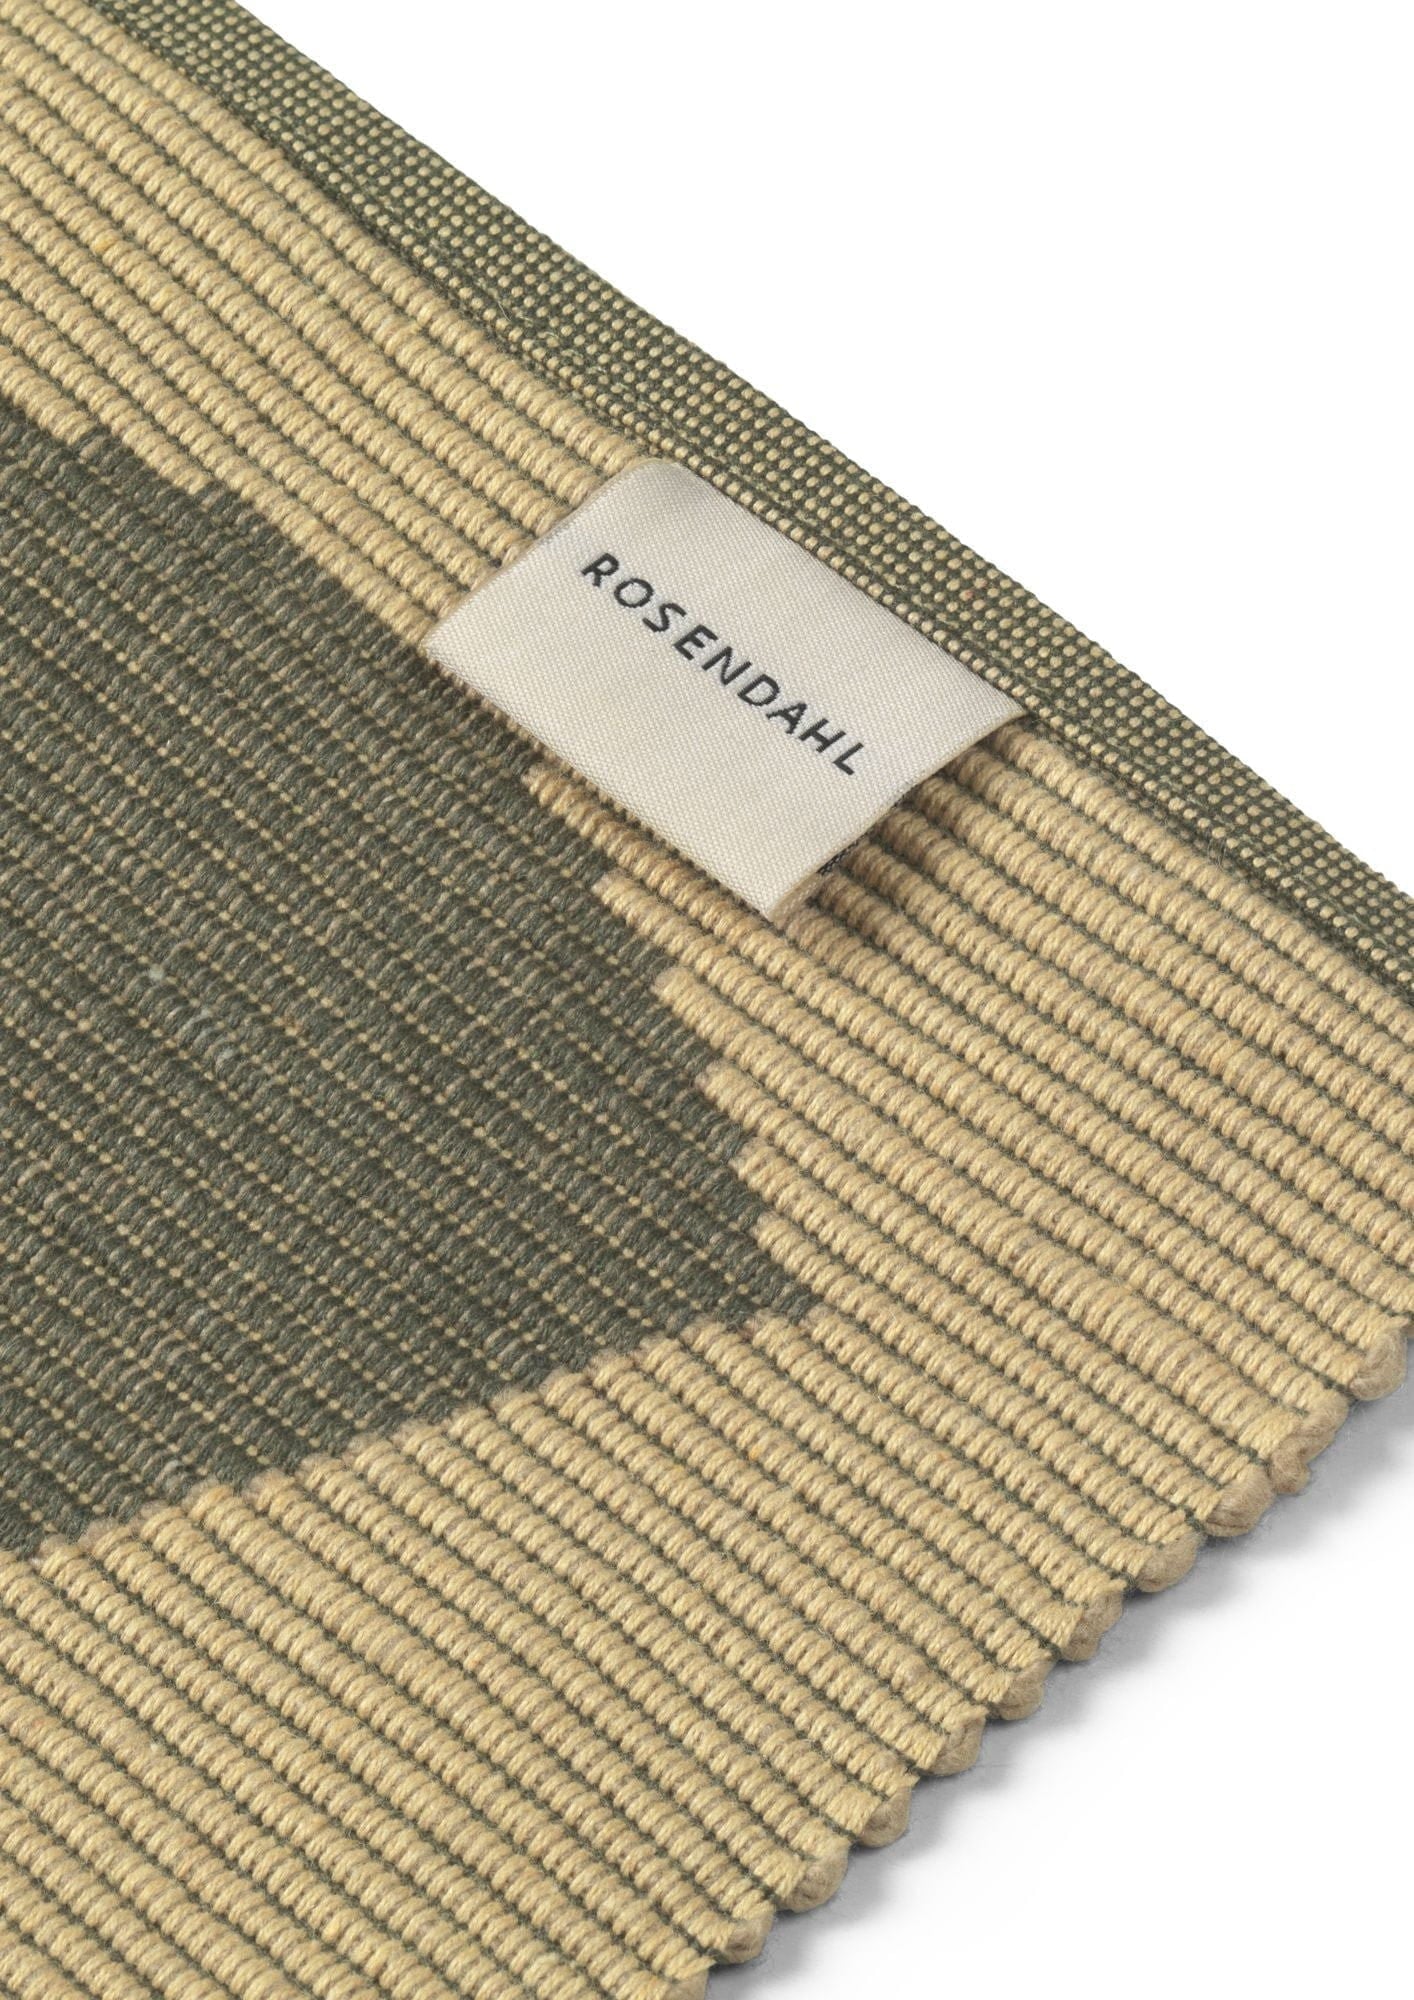 Rosendahl Rosendahl Textiel buiten natura 43x30 cm, groen